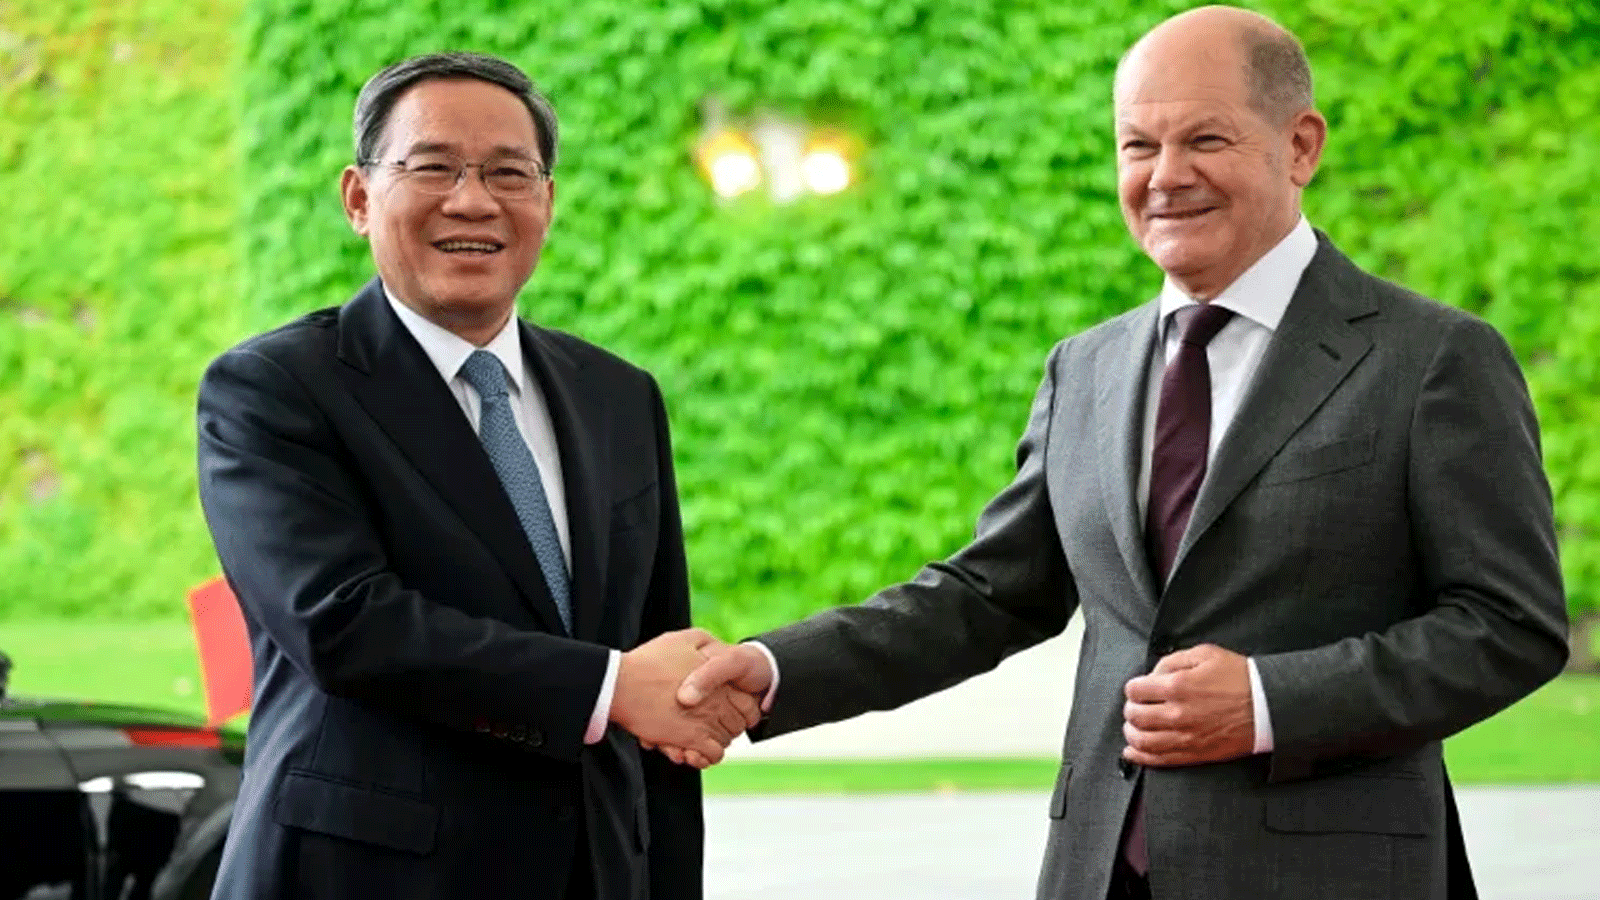 المستشار الألماني أولاف تشولتس يصافح رئيس وزراء الصين لي تشيانغ في الوقت الذي تسارع فيه ألمانيا لتنويع شركائها التجاريين